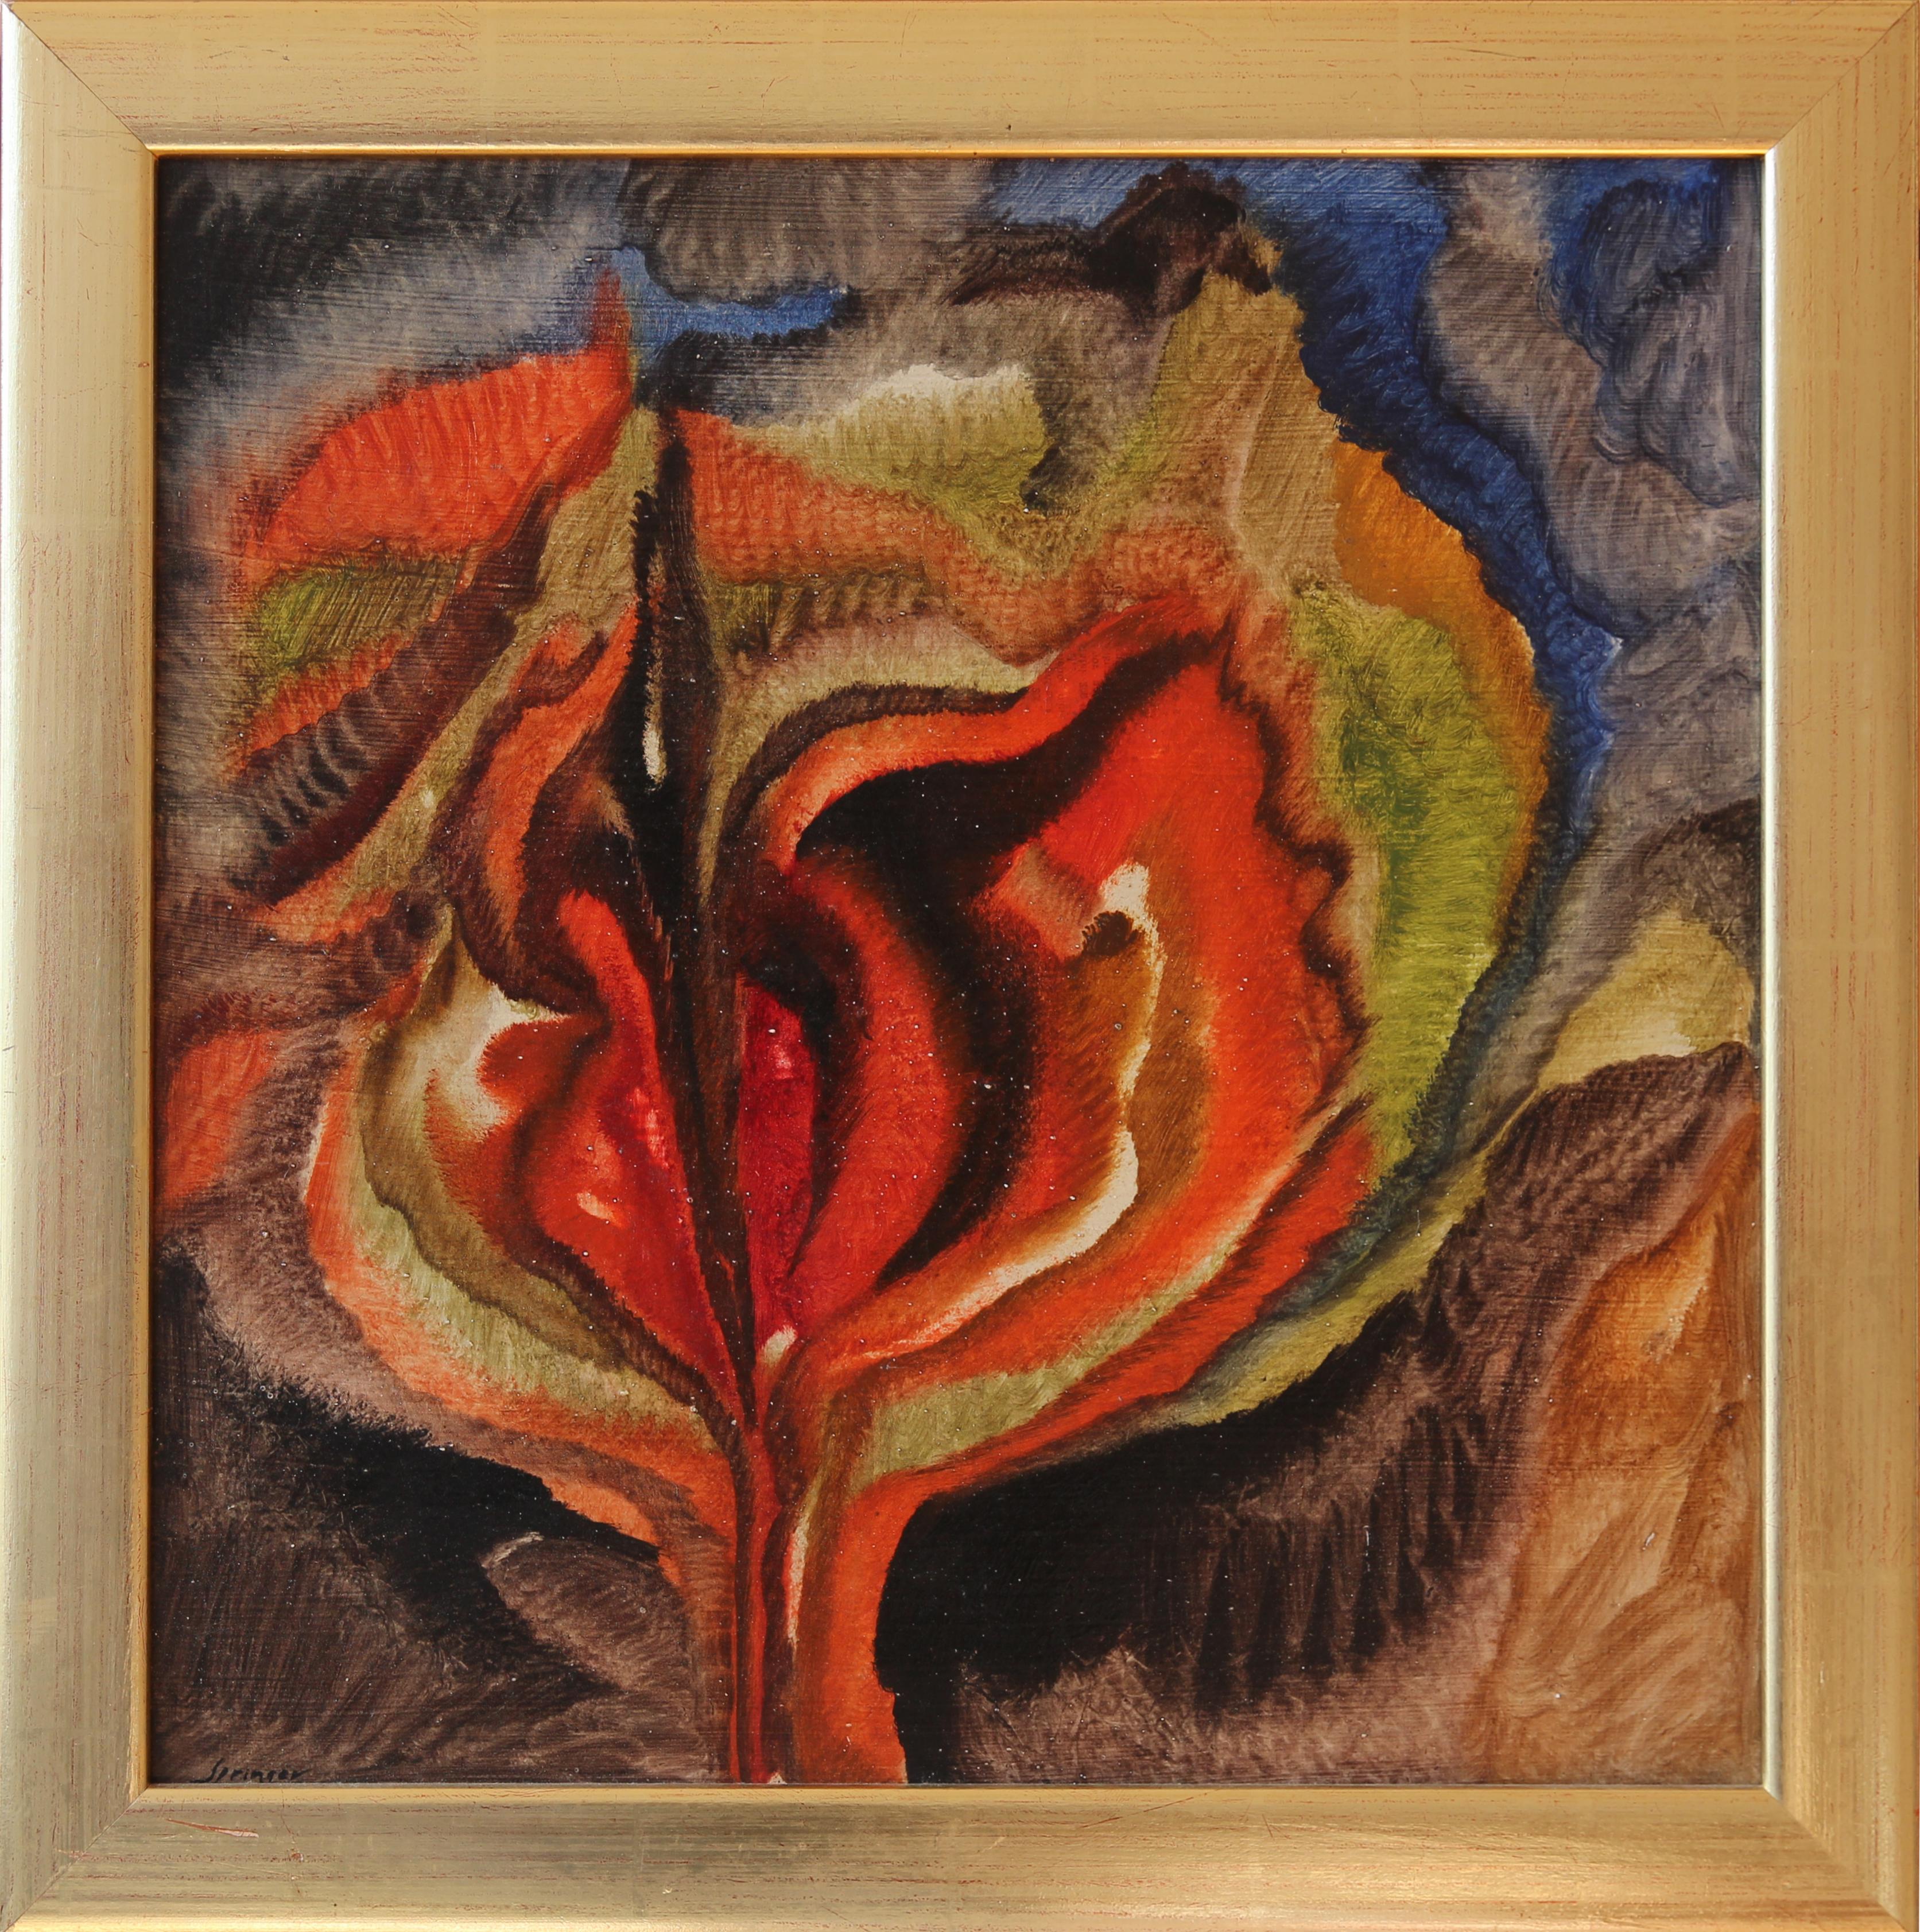 Composition florale "Blossom", 1950-1959 par Ferdinand Springer (1907-1998), Allemagne. Huile sur panneau dur. 
Signé en bas à gauche : Springer. Signé au verso : F. Springer. Encadré.
Mesures : Hauteur : 48,5 cm (19.09 in), Largeur : 48 cm (18.9